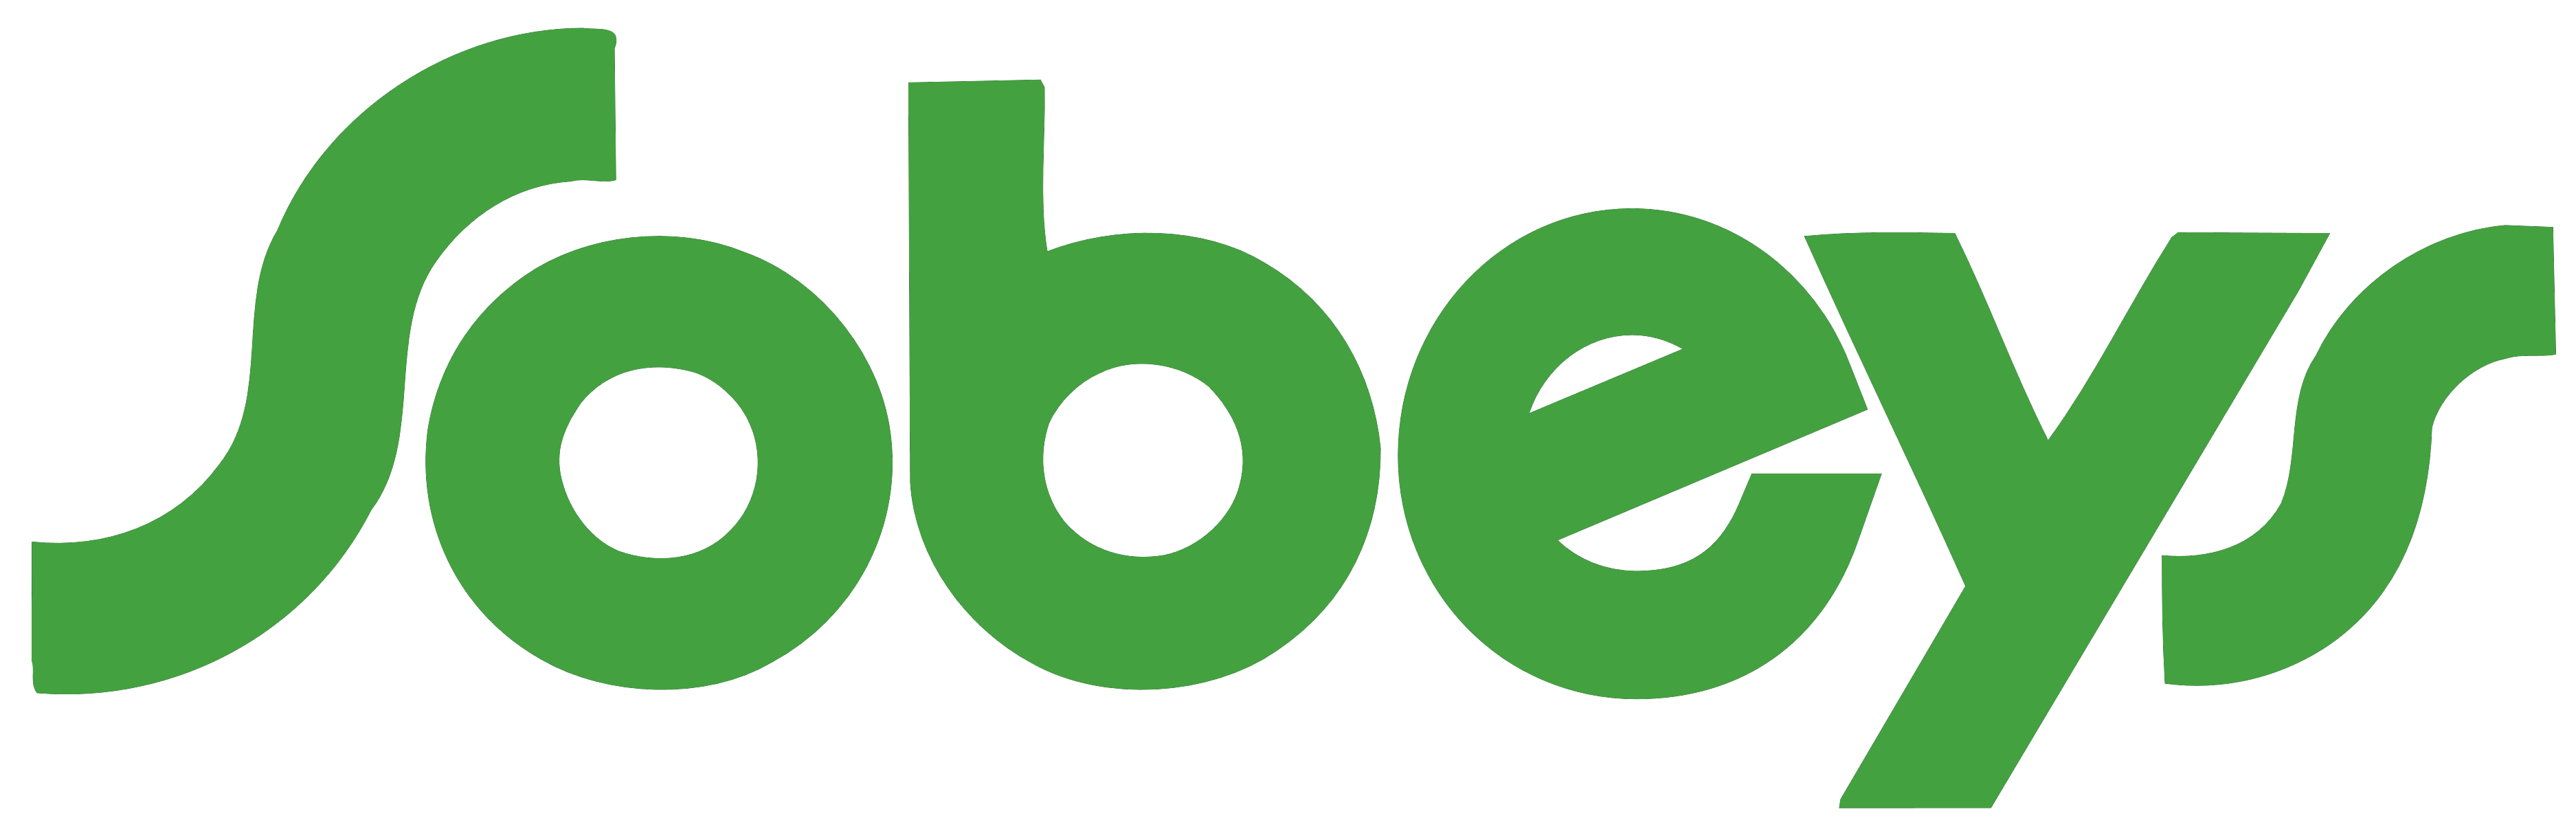 Sobeys - Logos Download